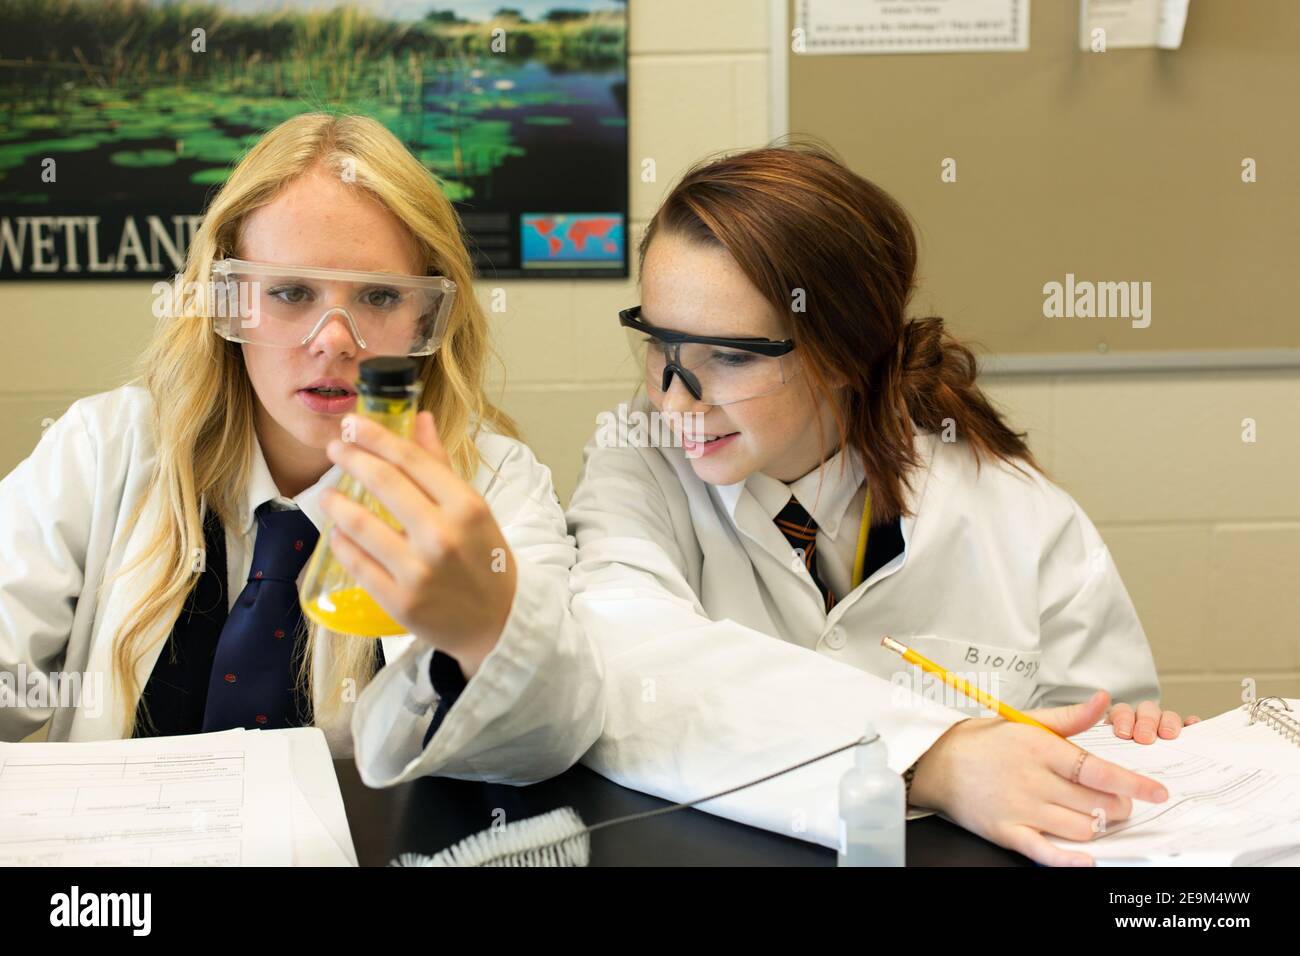 Deux adolescentes effectuant une expérience scientifique Banque D'Images